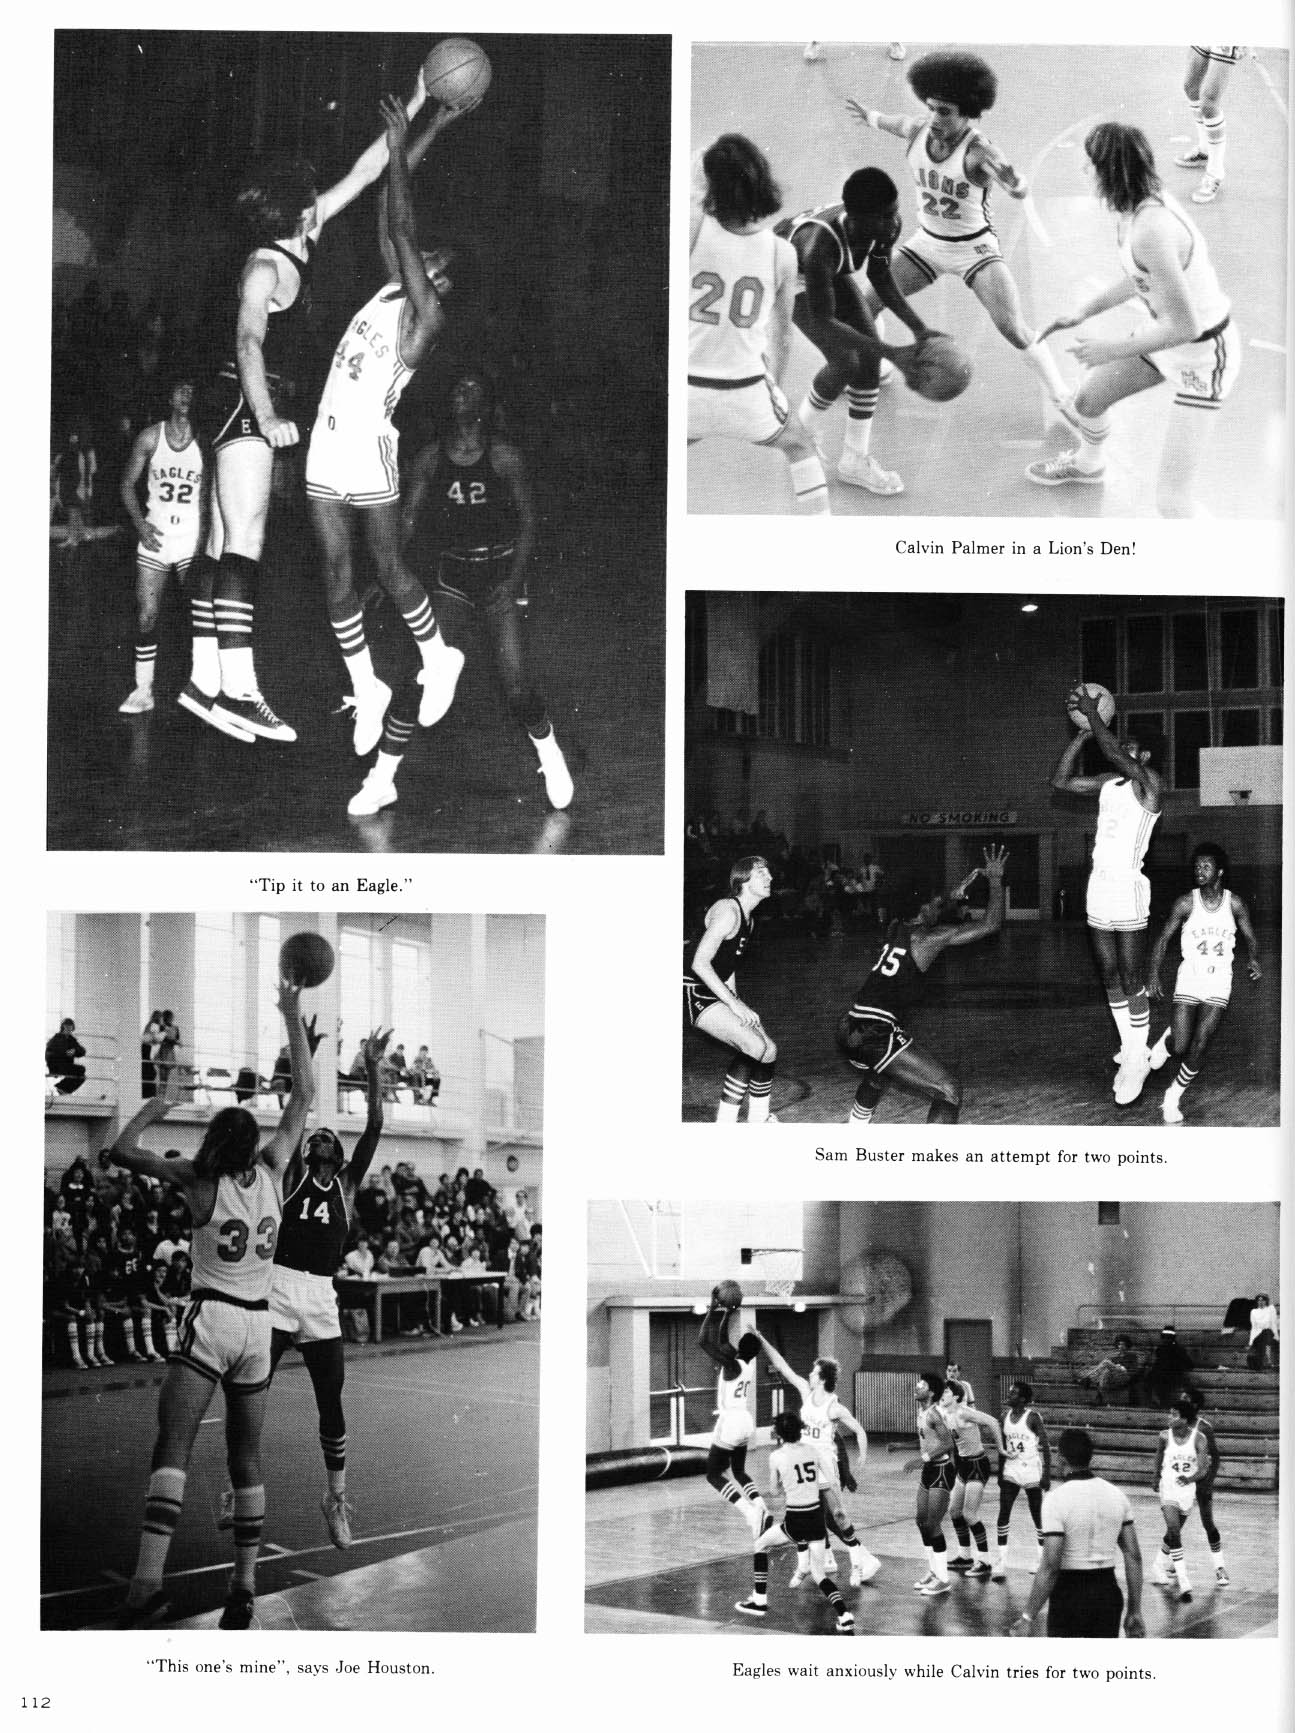 114 Page 112 Basketball